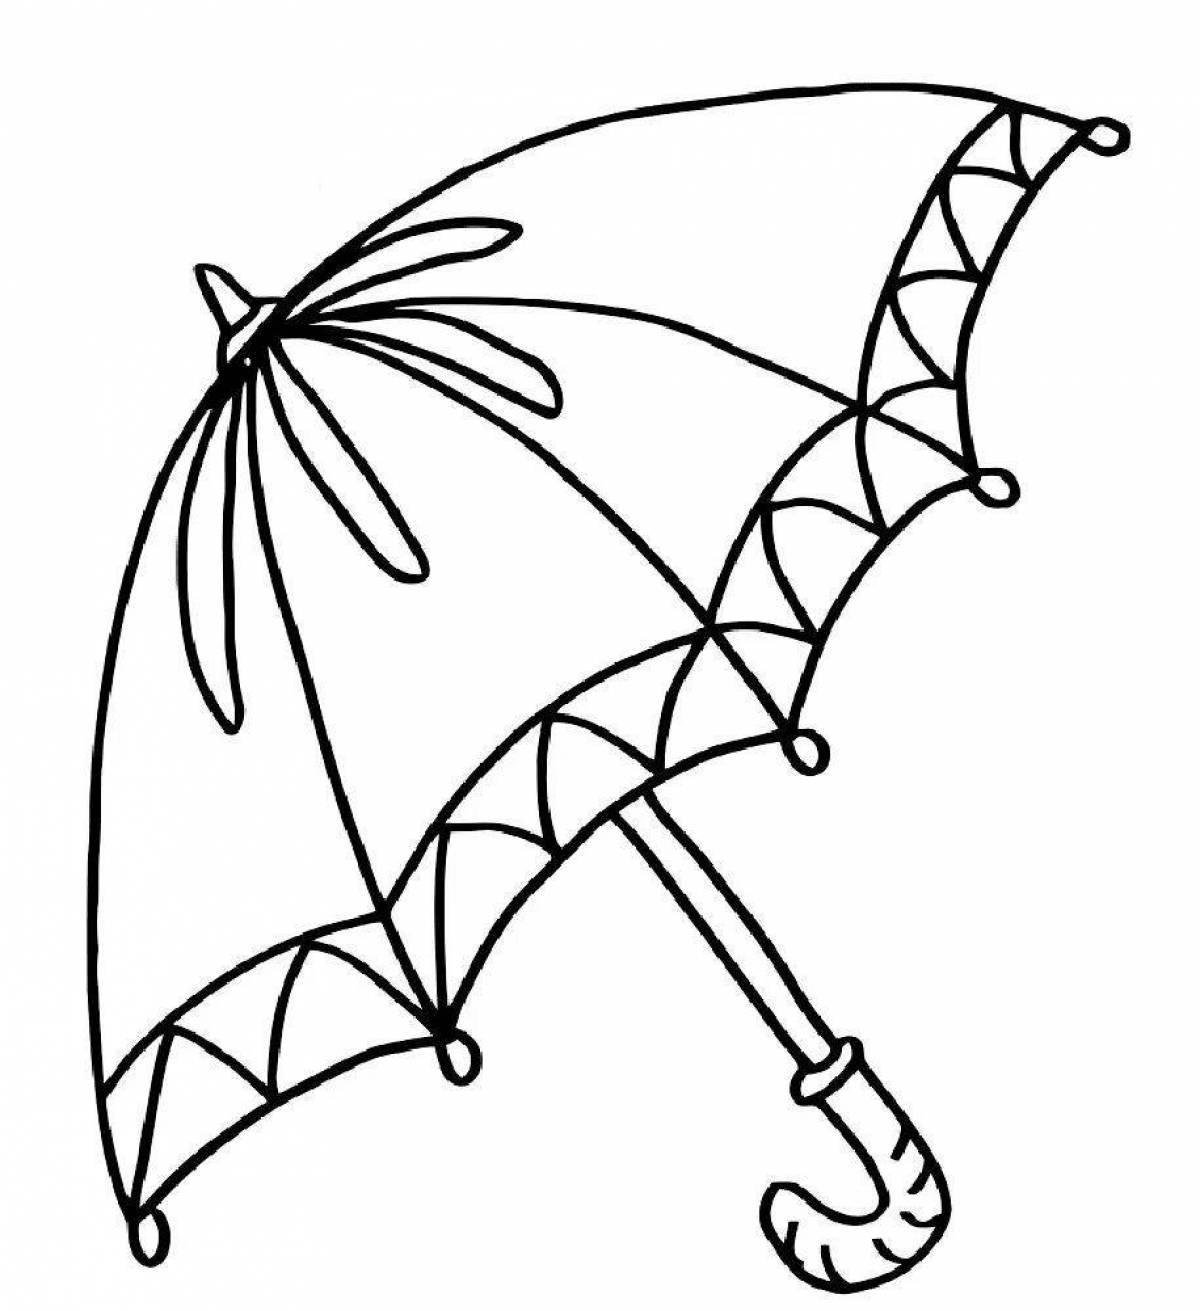 Красочная и восхитительная раскраска зонтик для детей